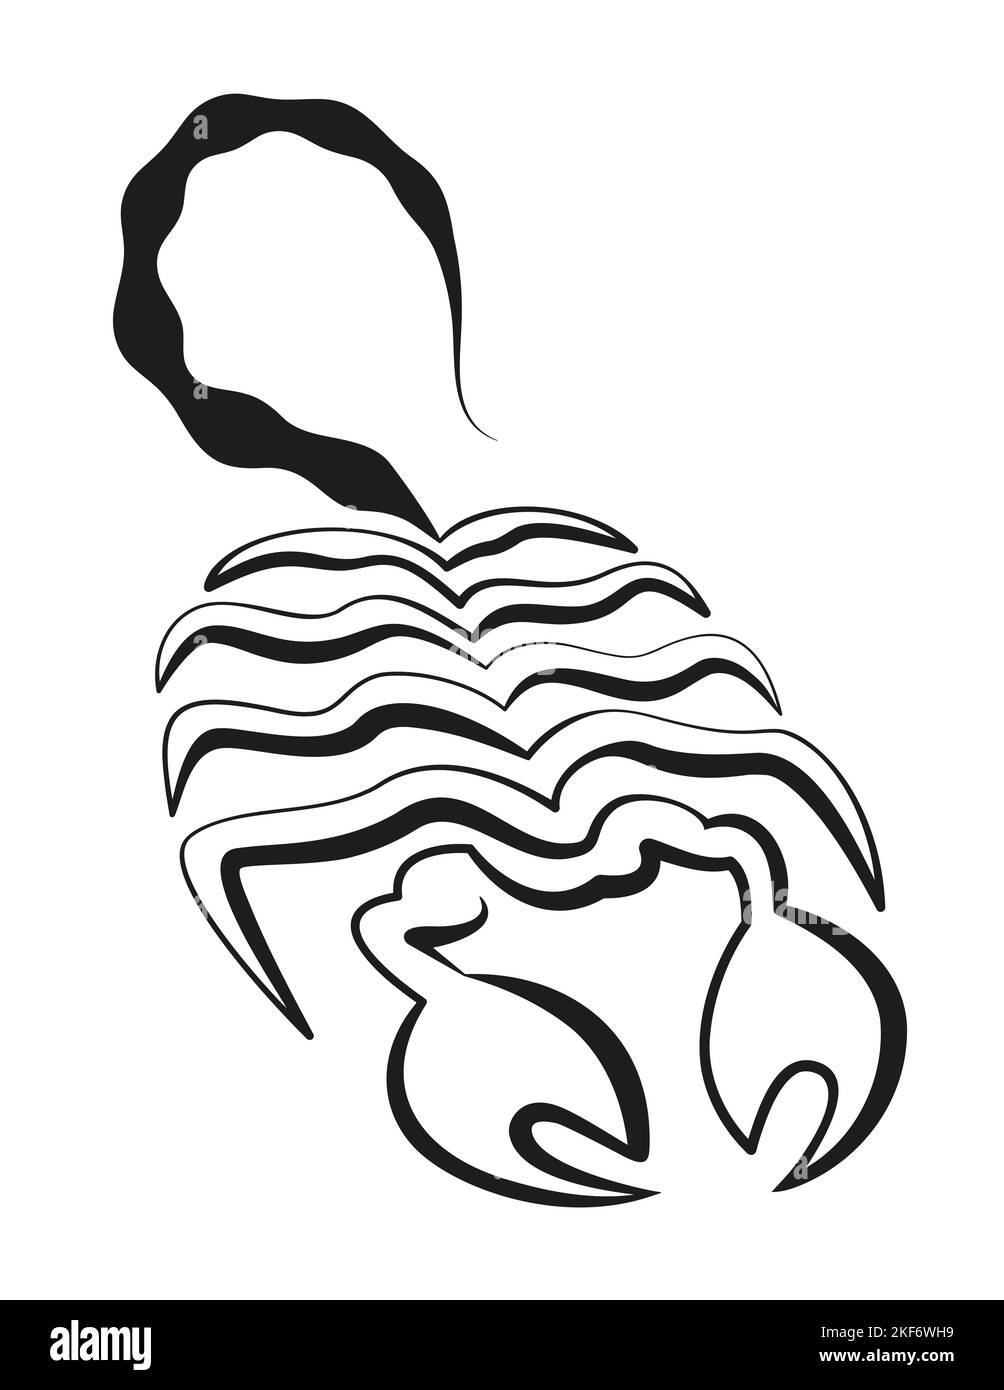 Scorpion-Symbolzeichnung - nur eine durchgehende schwarze Linie - Abbildung auf weißem Hintergrund. Stockfoto